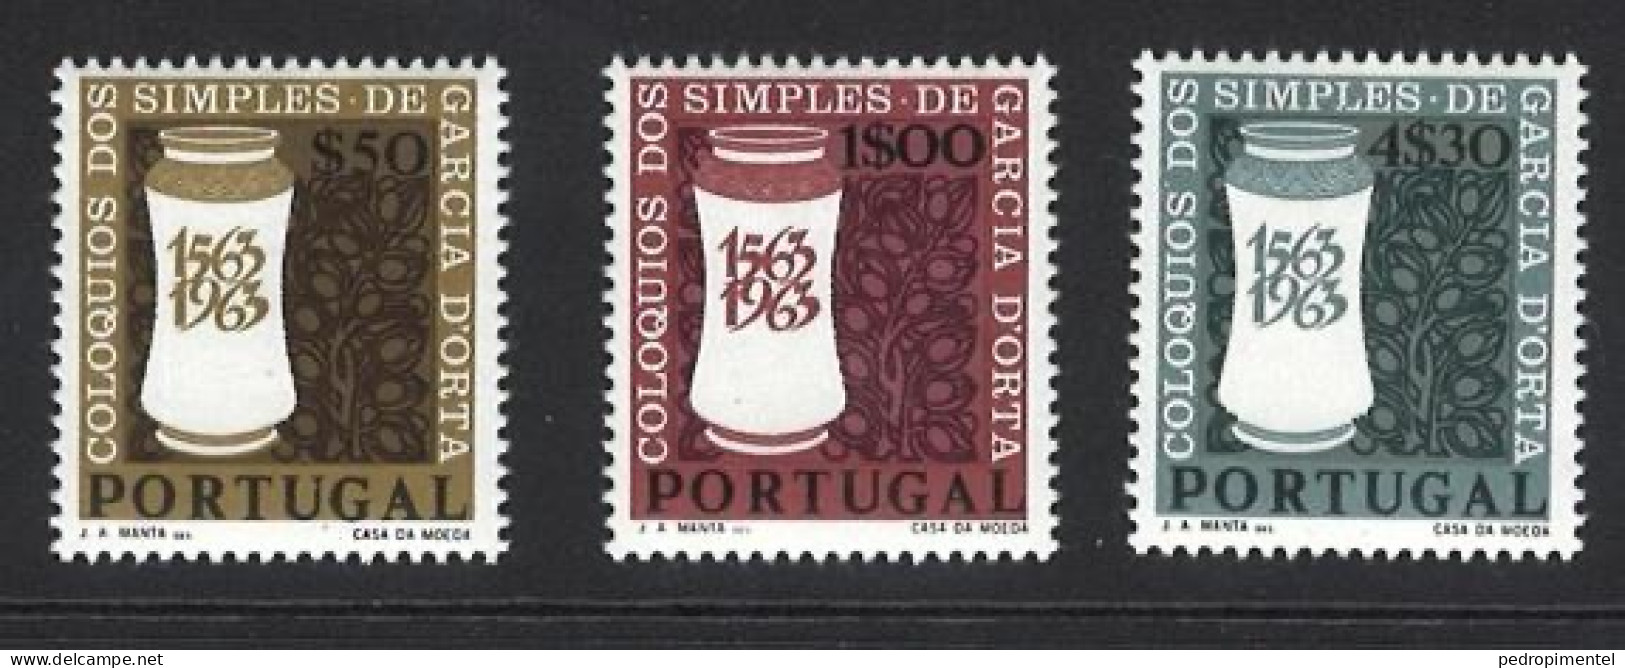 Portugal Stamps 1964 "Garcia Da Horta" Condition MNH OG #925-927 - Nuevos